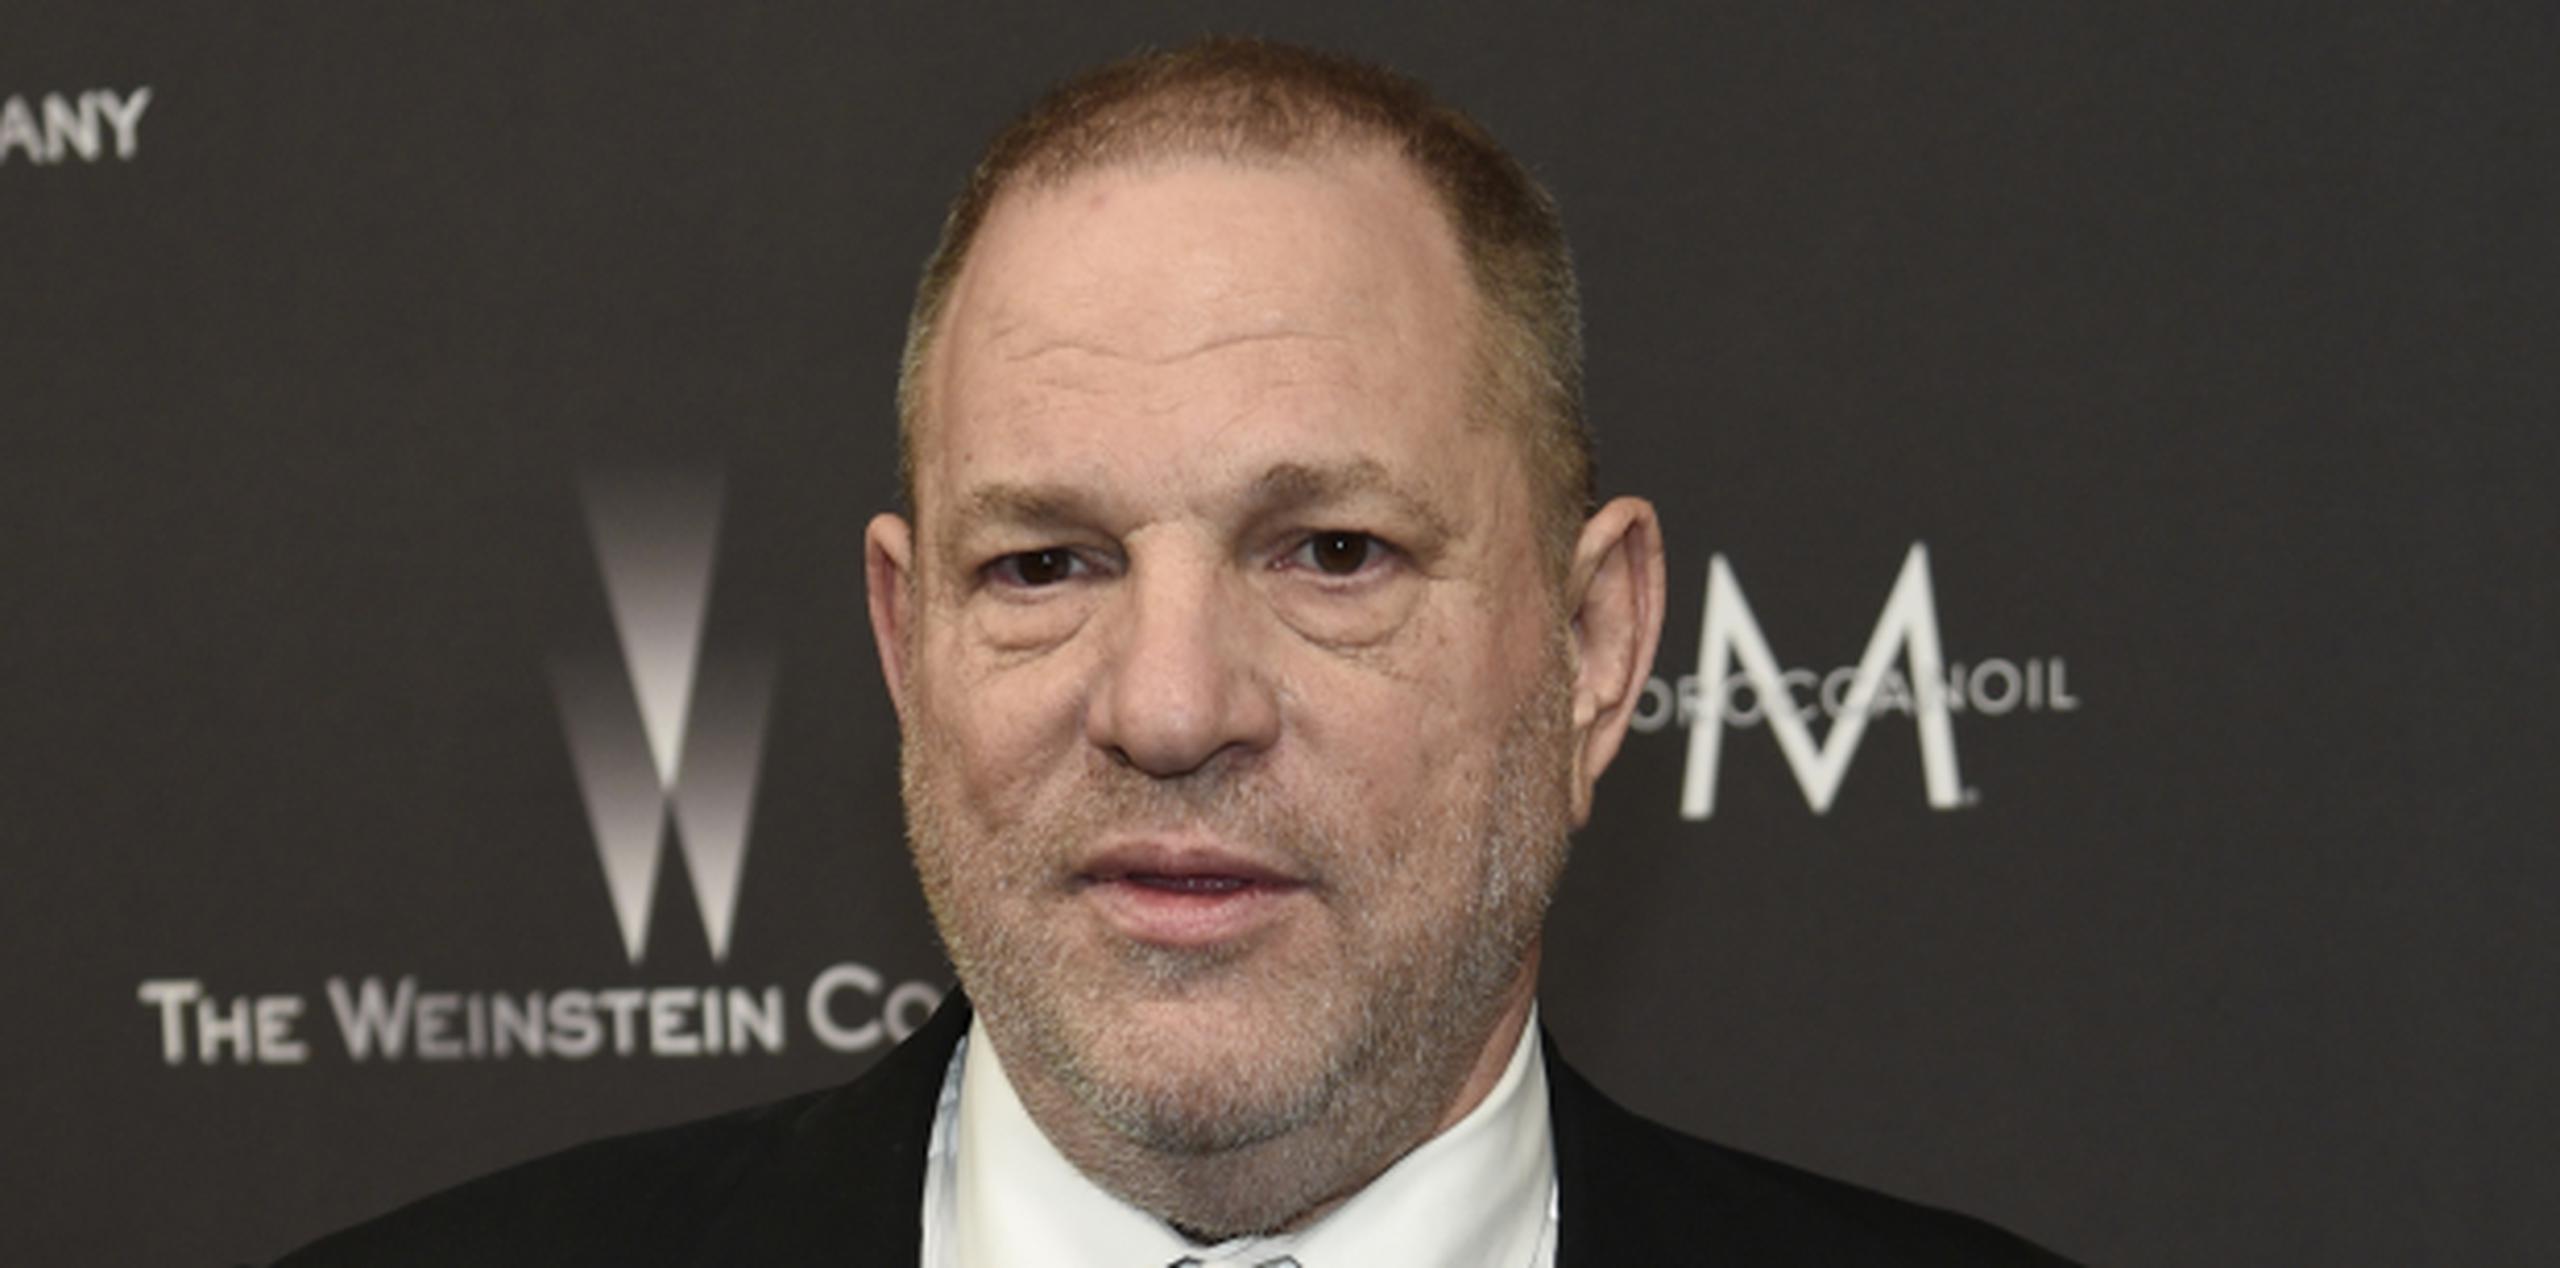 Harvey Weinstein fue el productor de películas como "Pulp Fiction" y "The Lord of the Rings". (Chris Pizzello / Invision / AP)